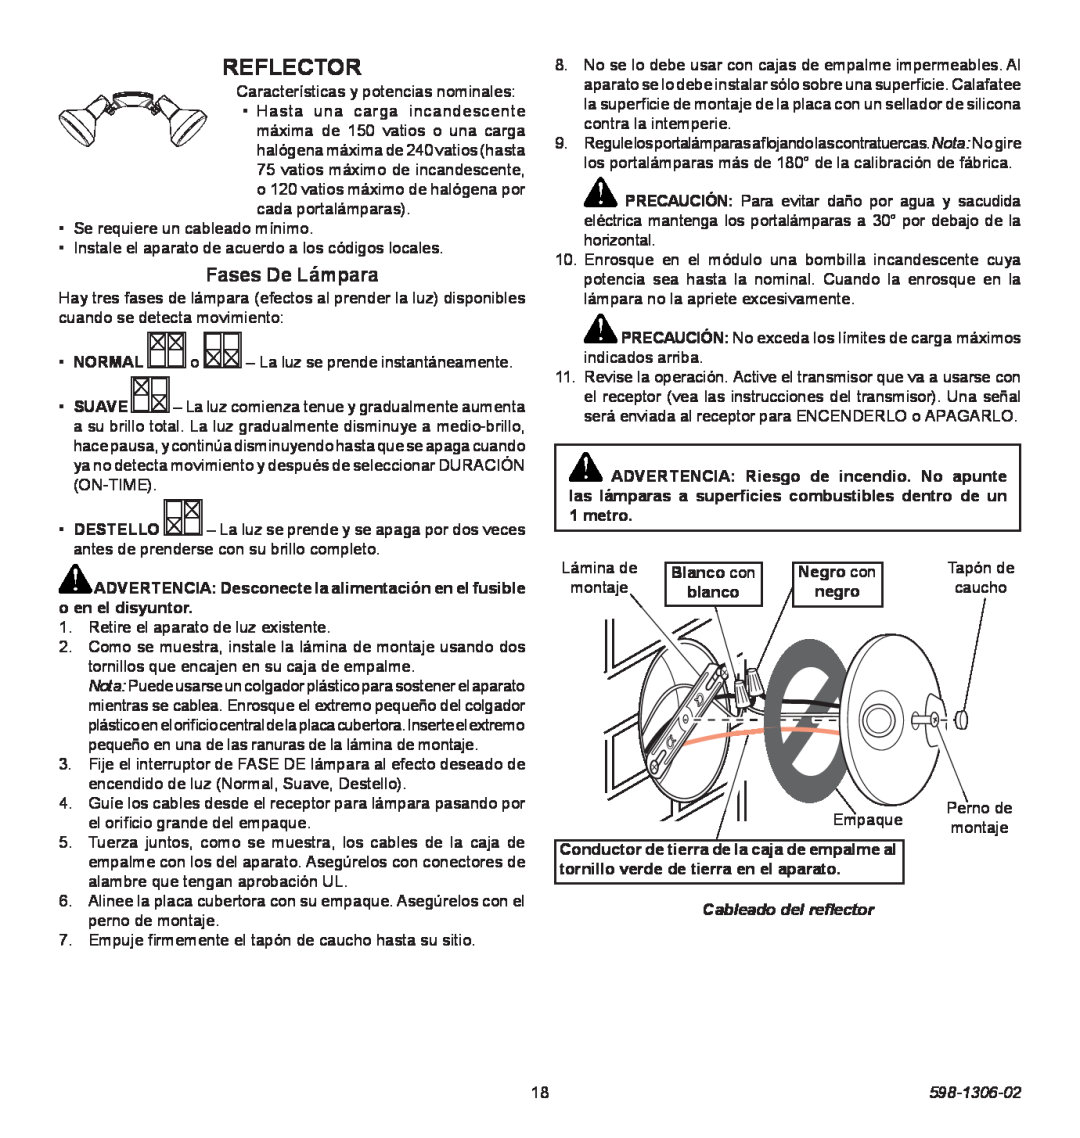 Heath Zenith 598-1306-02 manual Reflector, Fases De Lámpara, Cableado del reflector 